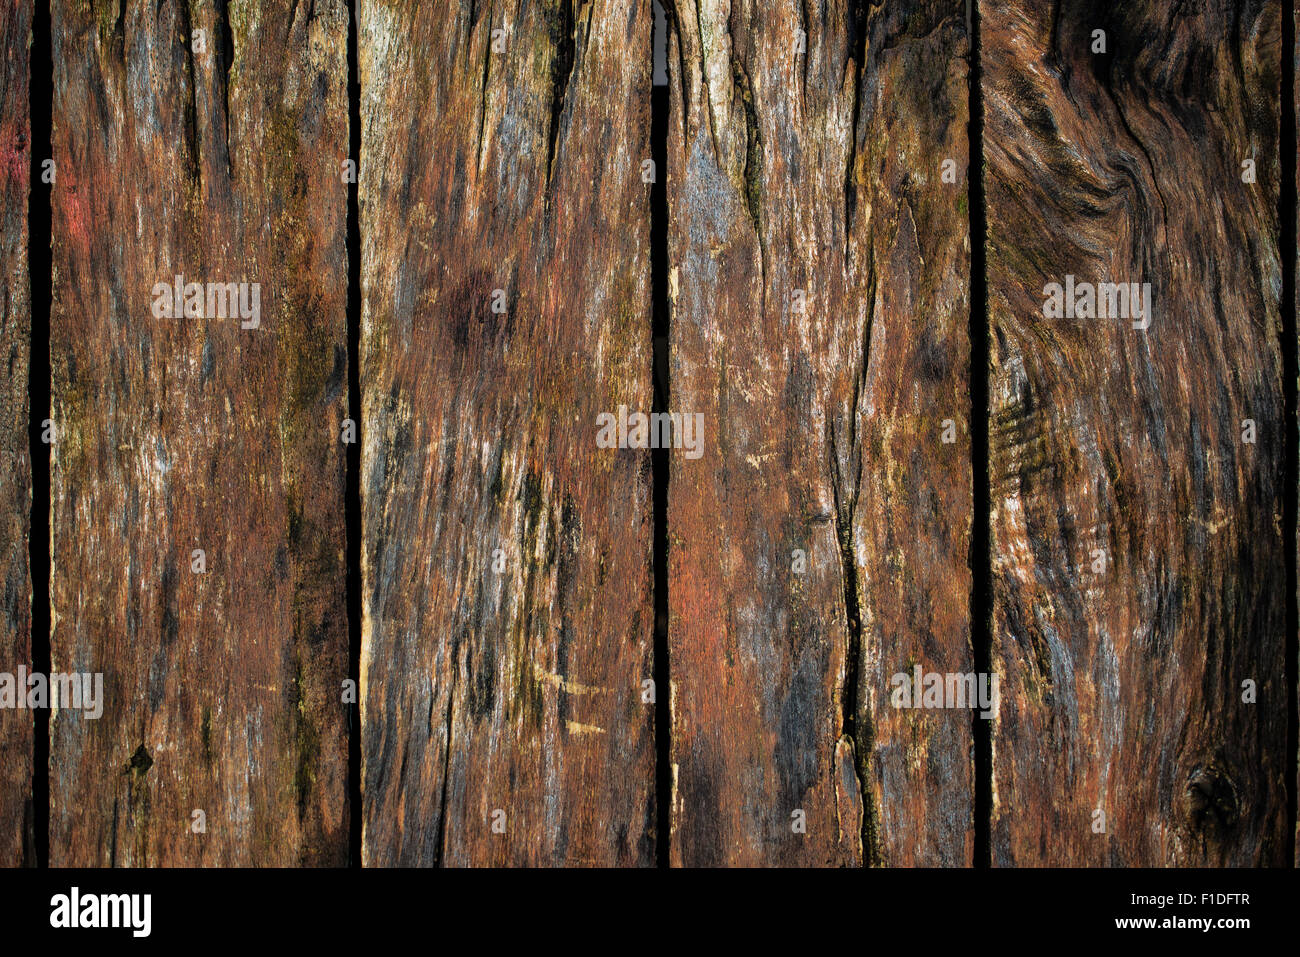 La textura de la superficie, madera rústicos tablones de madera vieja como fondo Foto de stock